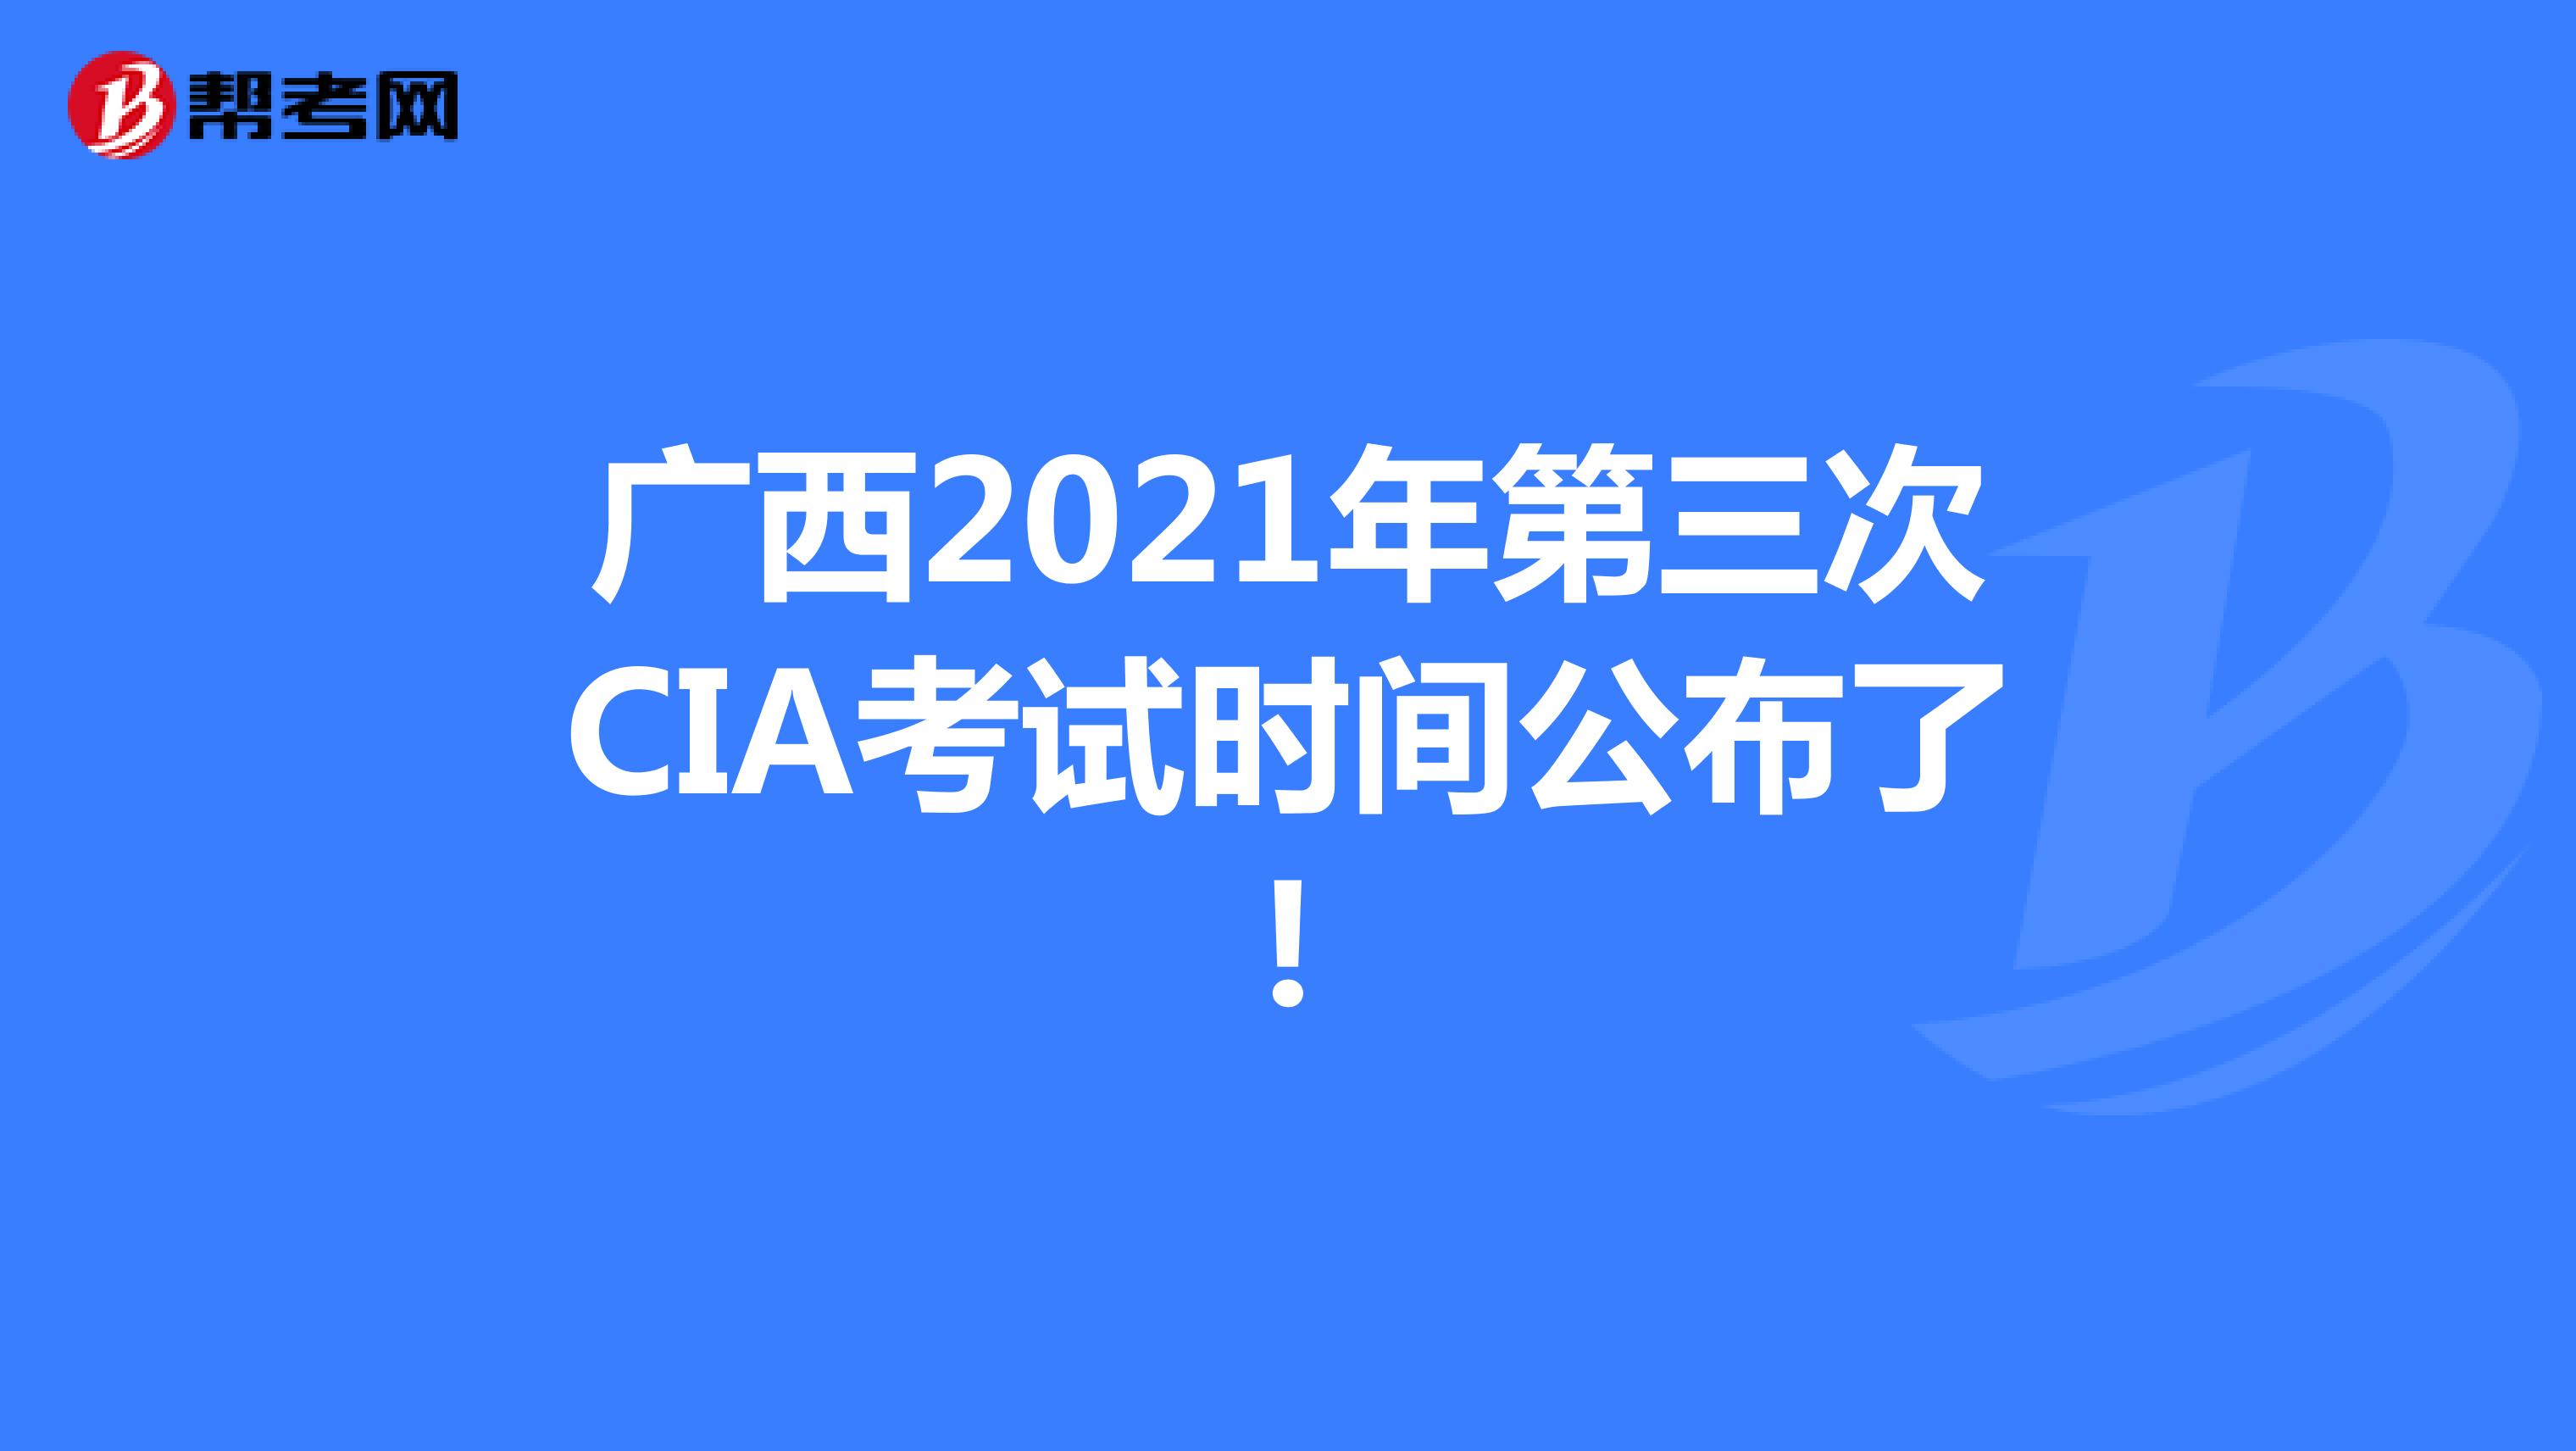 广西2021年第三次CIA考试时间公布了!